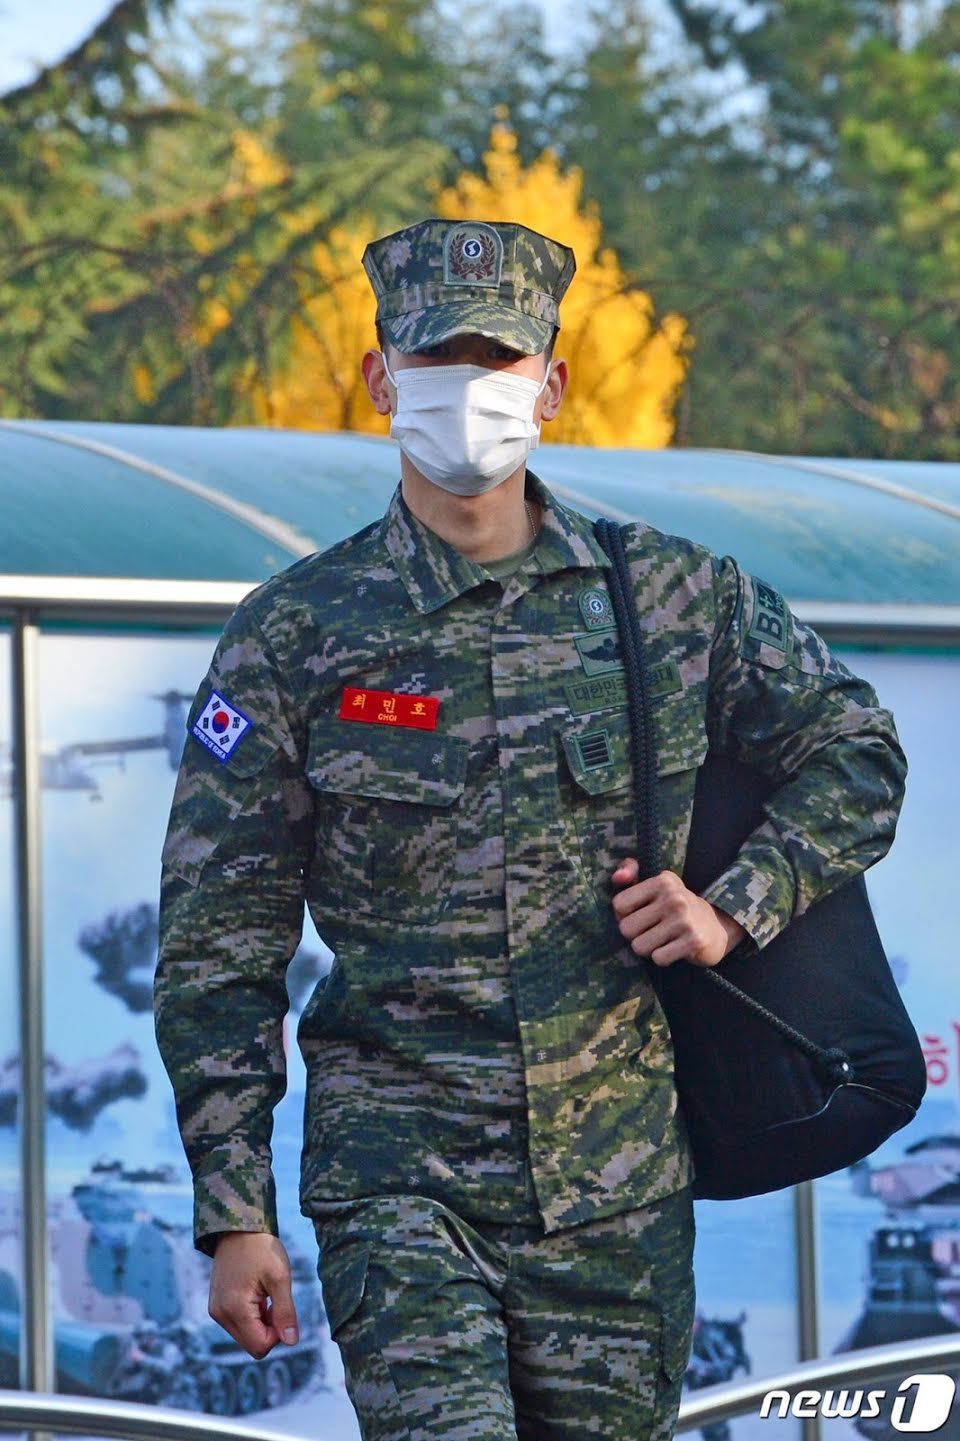 Militer membuatnya terlihat lebih seksi dan berkarisma, sehingga seperti berada dilevel tertinggi.*/Dok Koreaboo